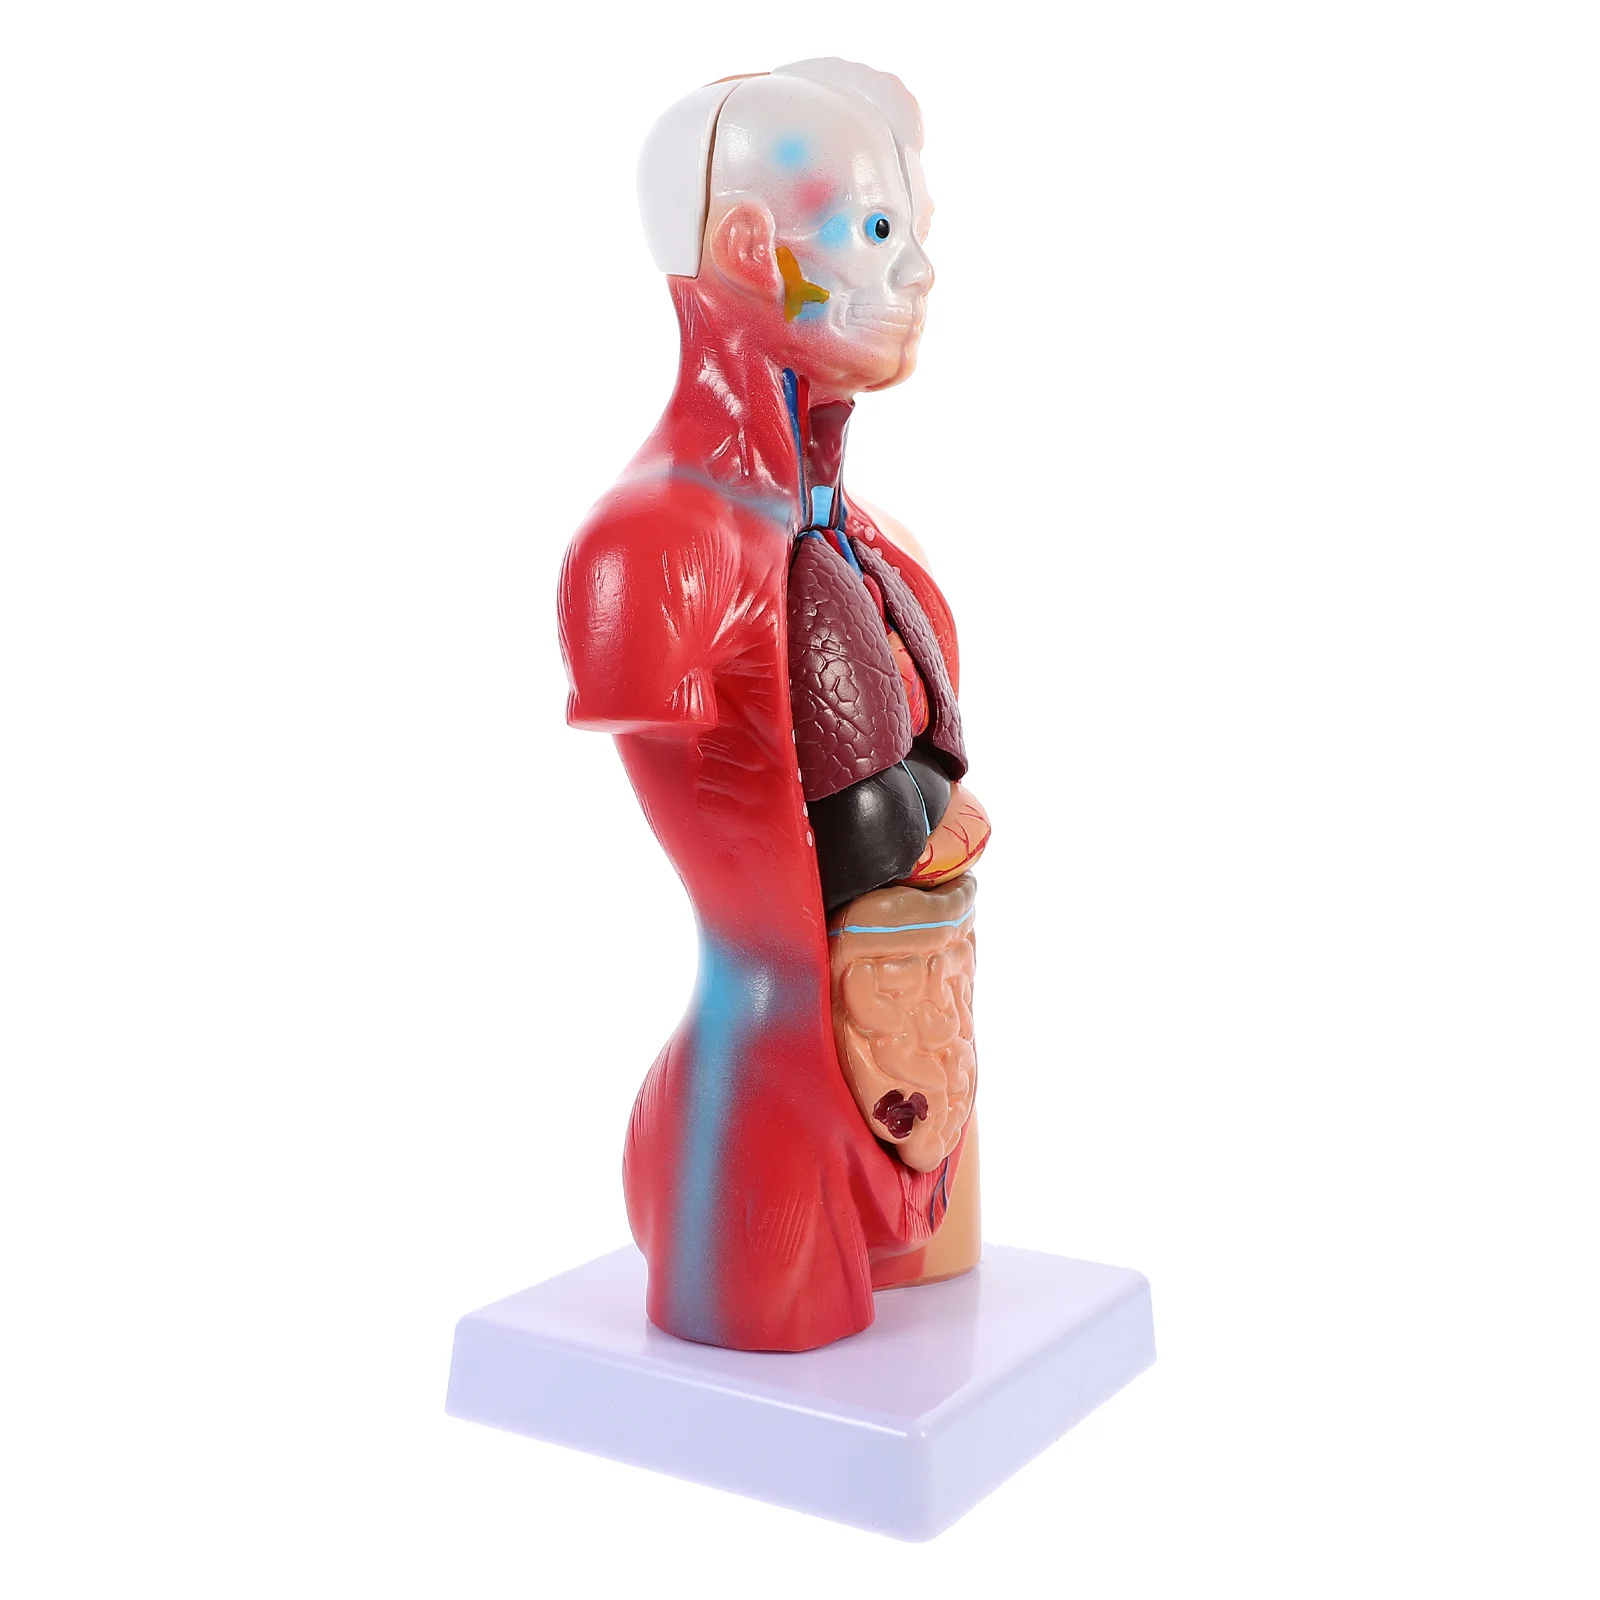 

Манекен, школьный обучающий инструмент, модель человеческого тела, анатомический торс из ПВХ, детский анатомический манекен